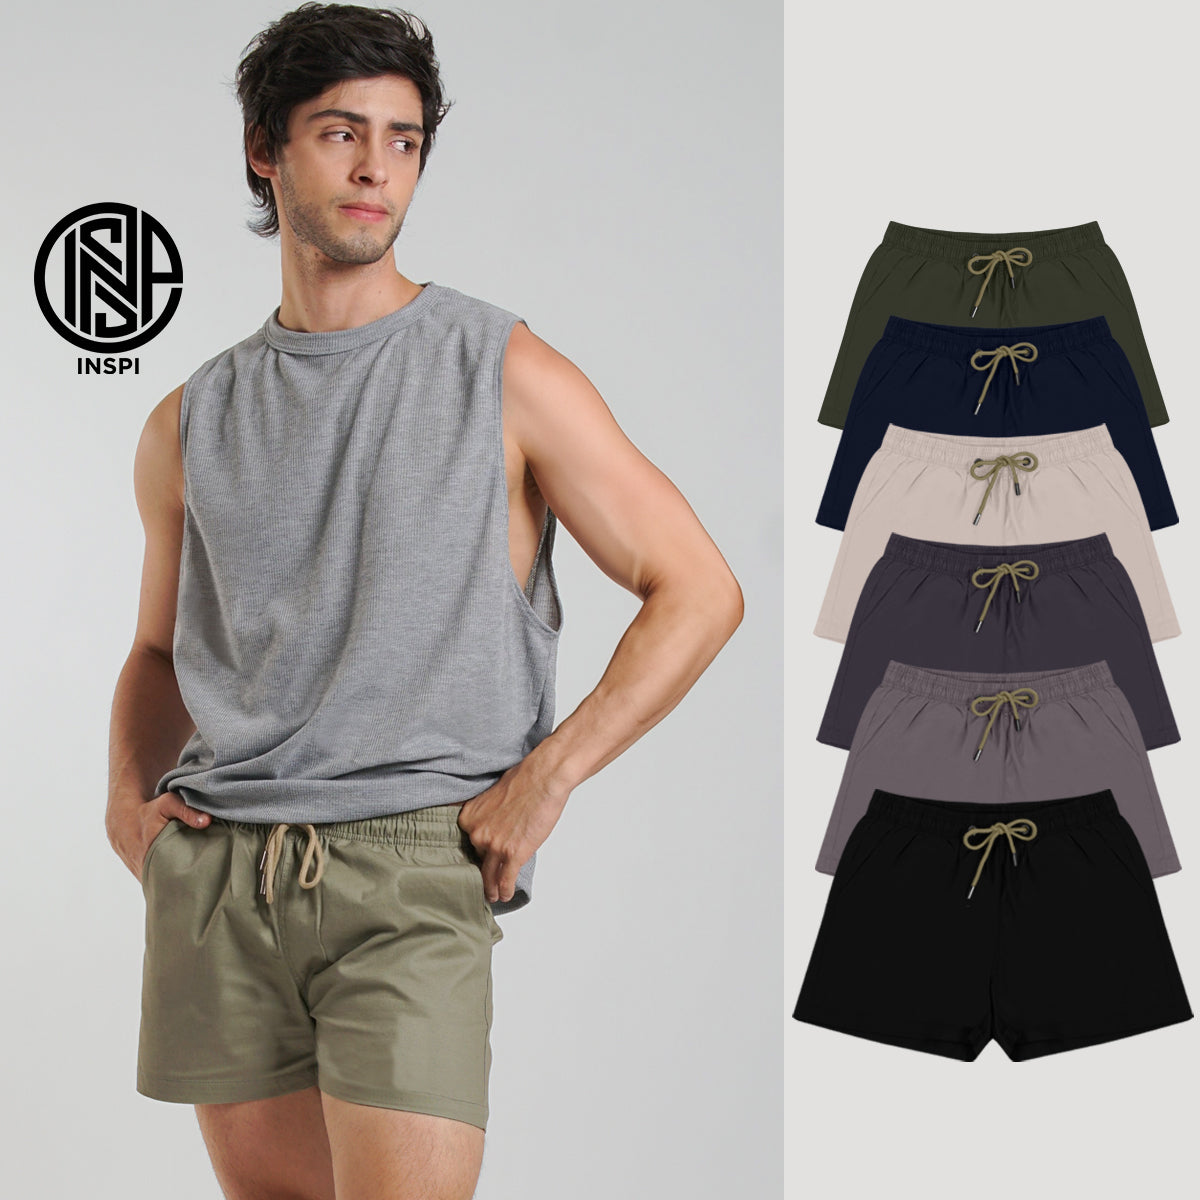 INSPI Twill Shorts Light Khaki for Men with Side Pockets Drawstring Korean Above the Knee Short for Women